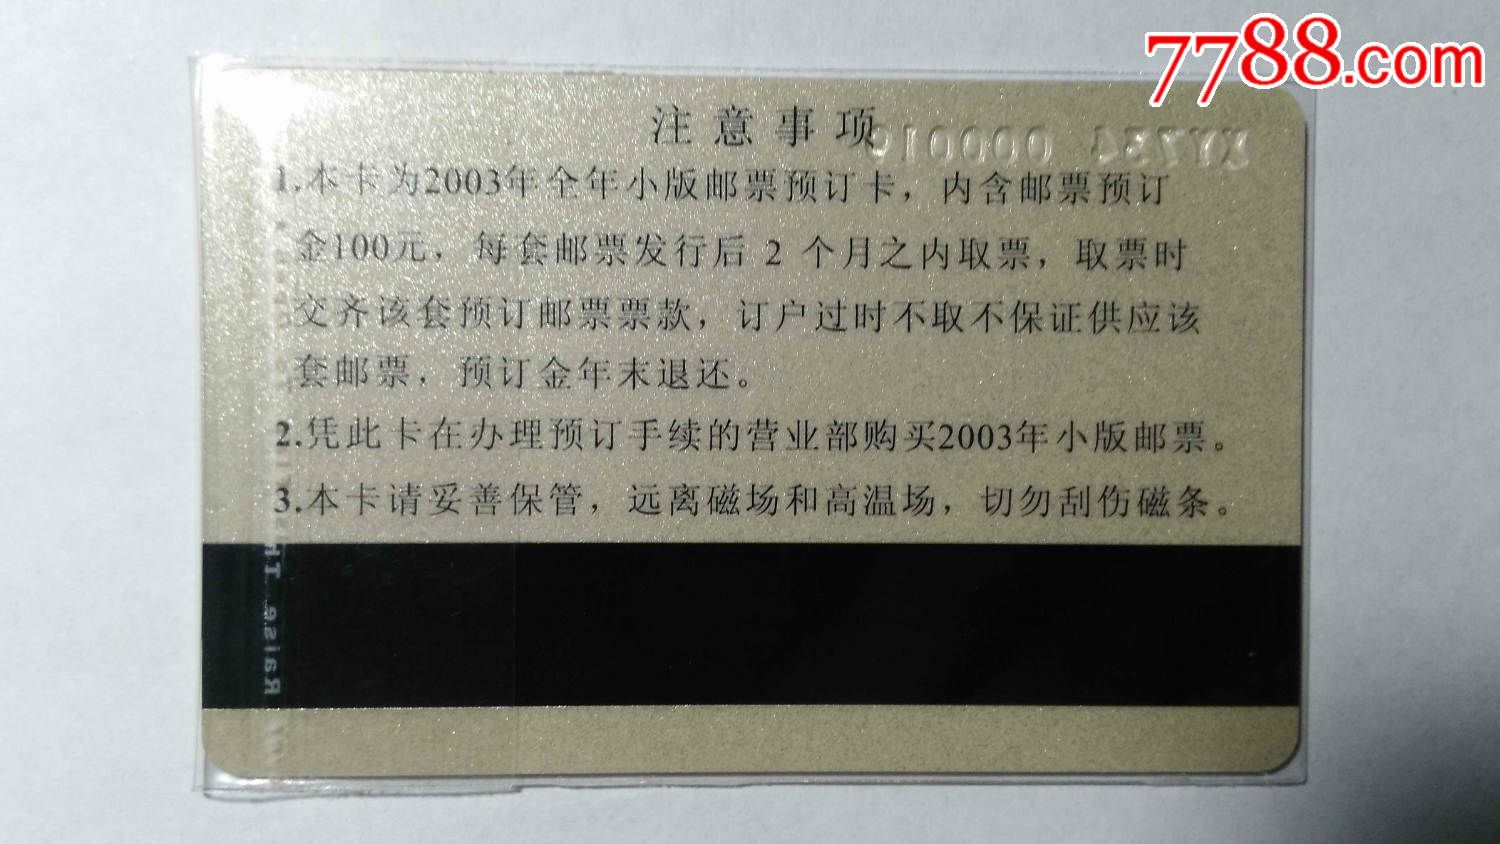 北京市西区邮票公司---'2003集邮预订卡-价格:1